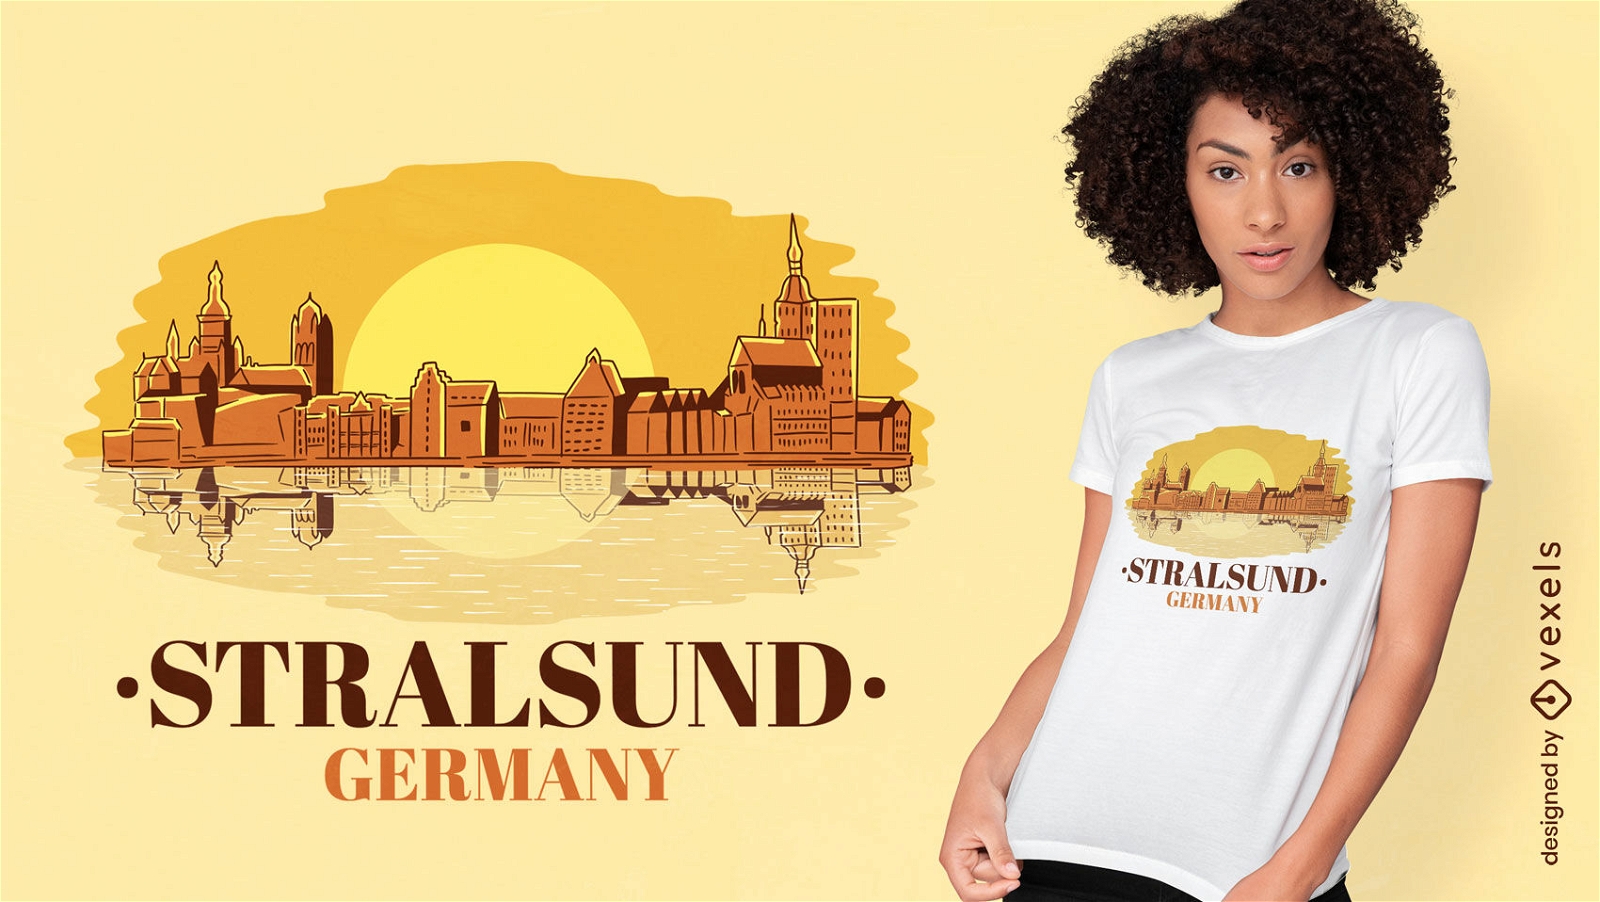 Stralsund Germany landscape t-shirt design